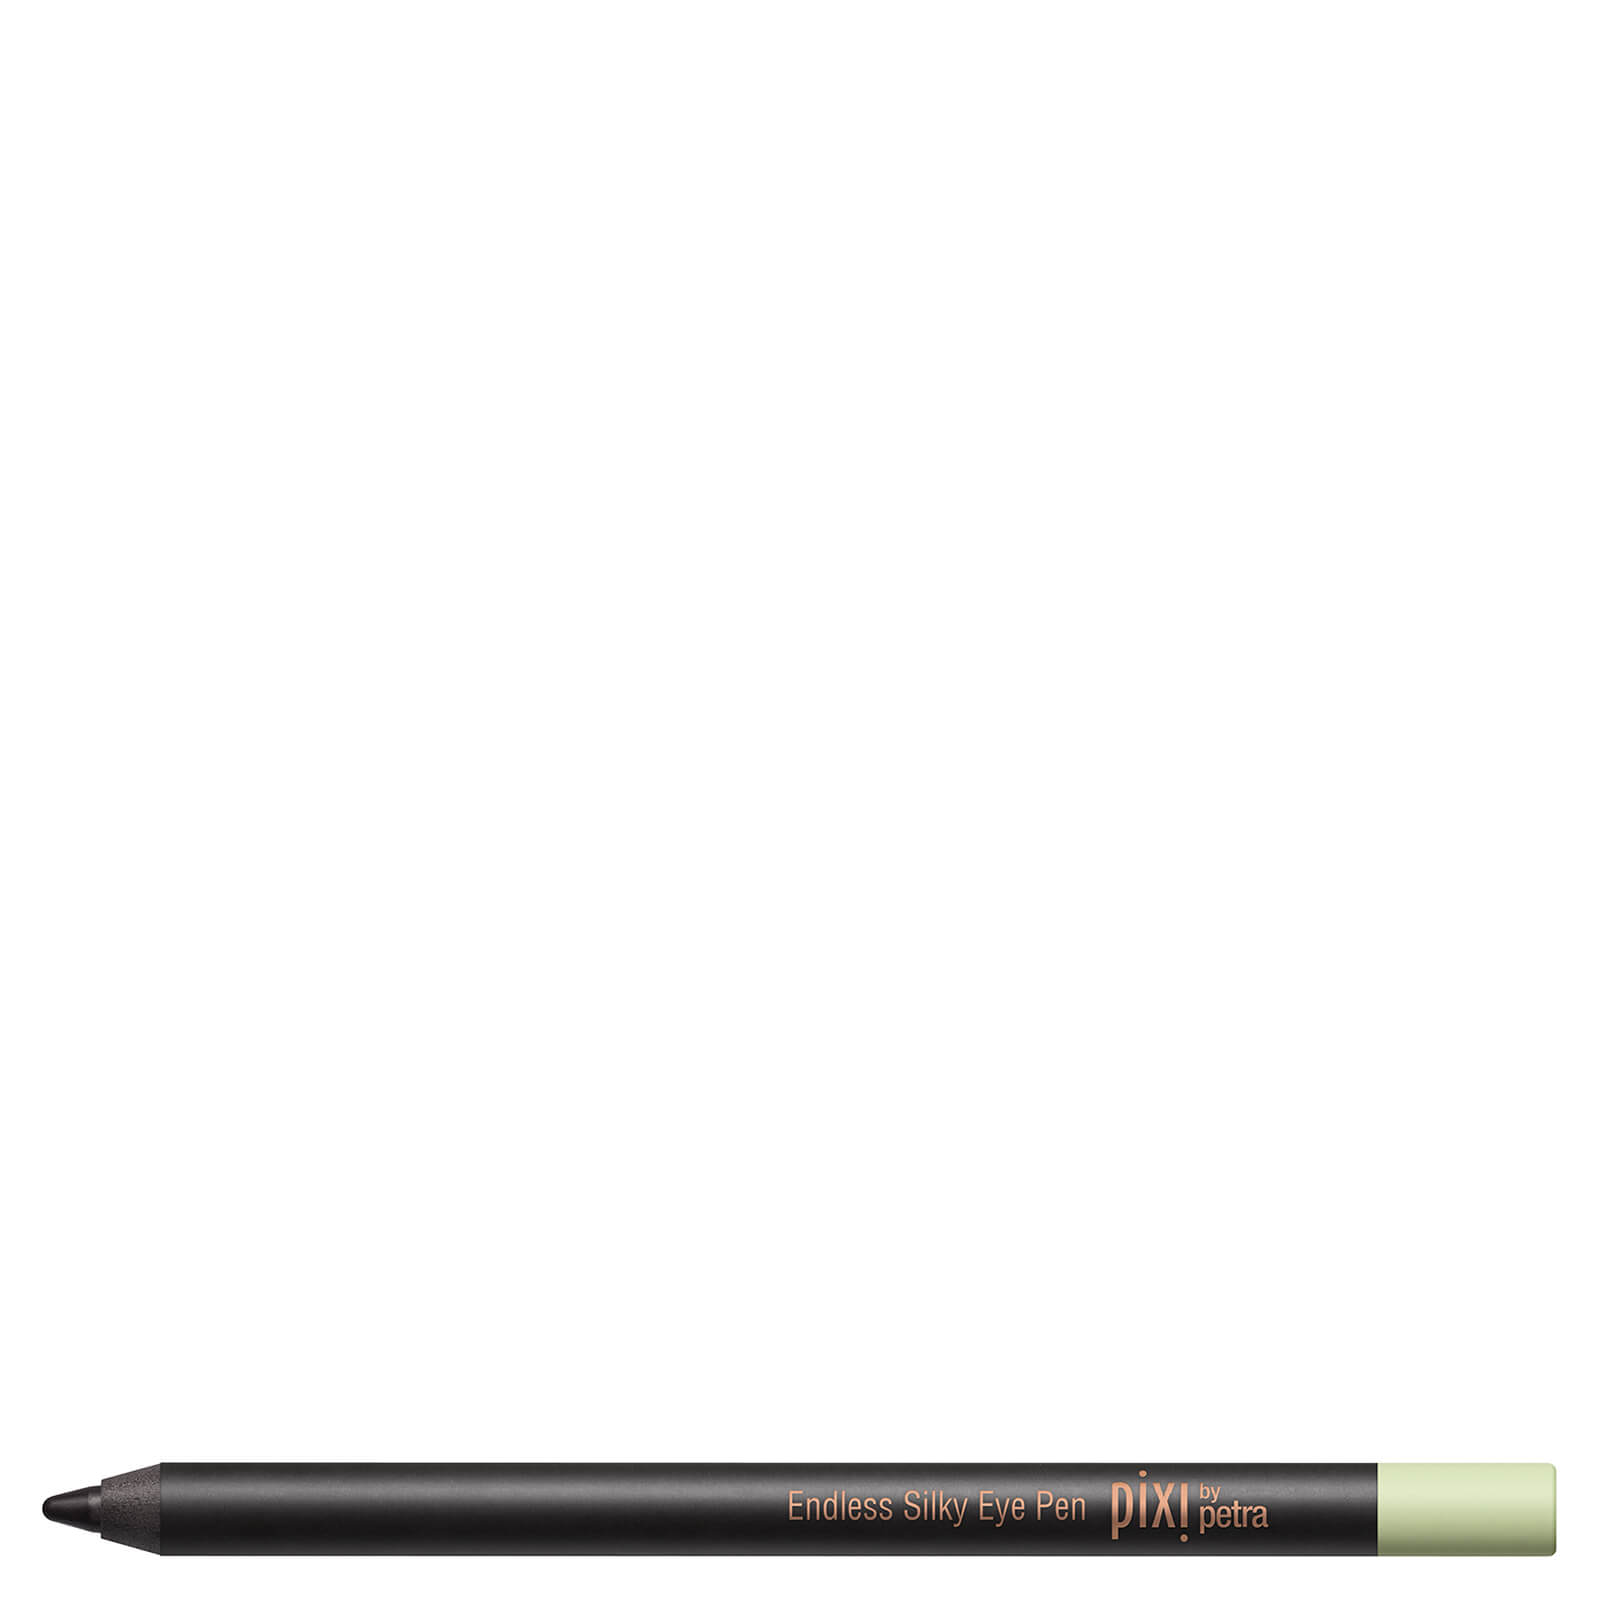 PIXI Endless Silky Eye Pen 1.2g (Various Shades) - Black Noir